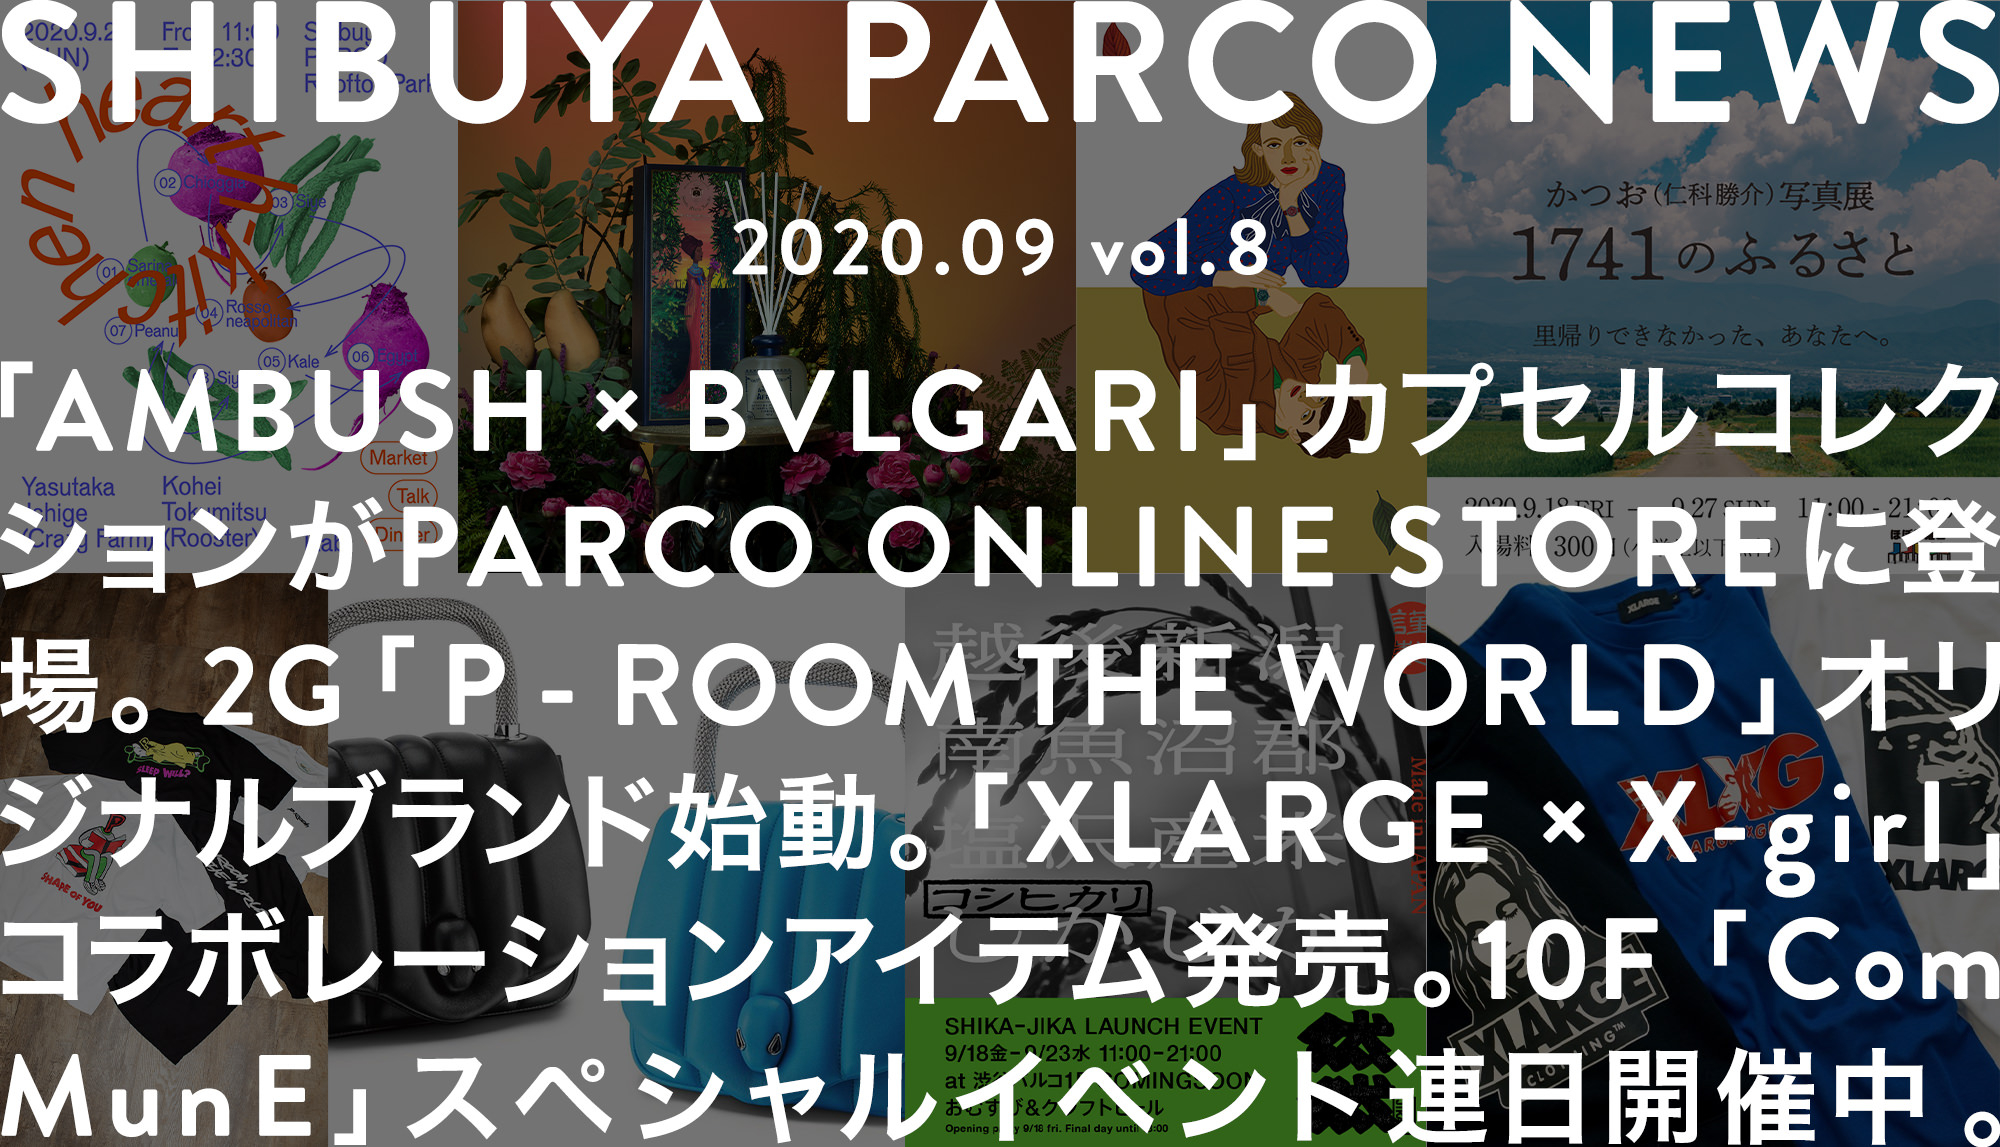 SHIBUYA PARCO NEWS-2020.9-vol.8